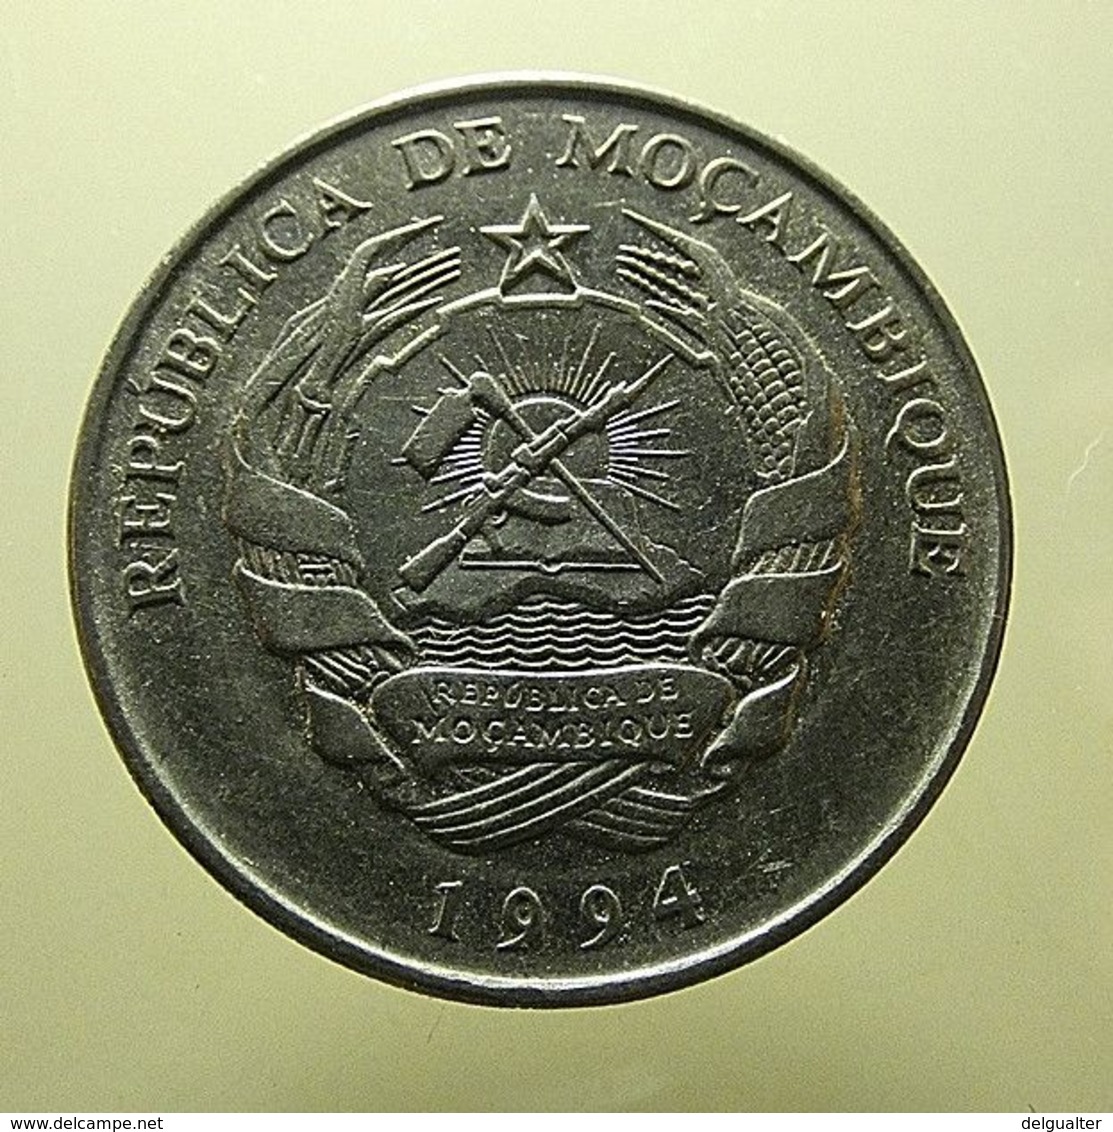 Moçambique 1000 Meticais 1994 - Mozambique